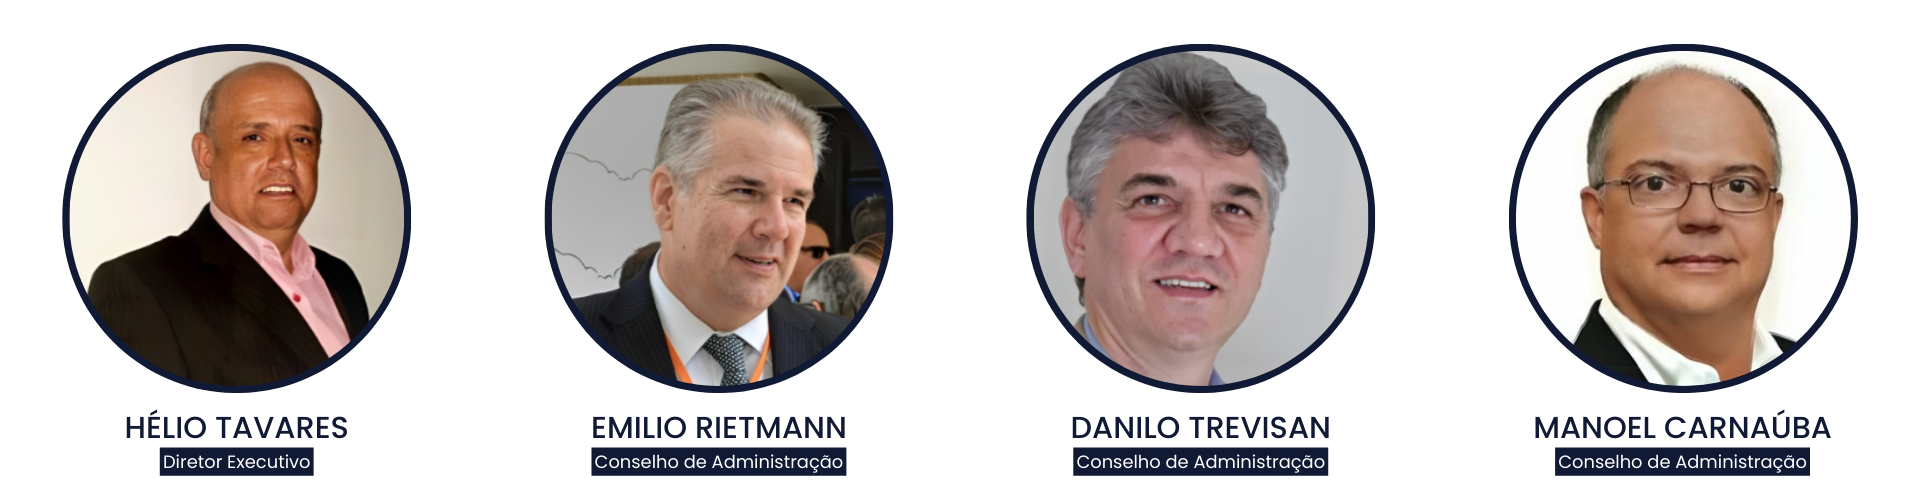 Hélio Tavares (Diretor Executivo), Emilio Rietmann (Conselho de Administração), Danilo Trevisan (Conselho de Administração) e Manoel Carnaúba (Conselho de Administração).